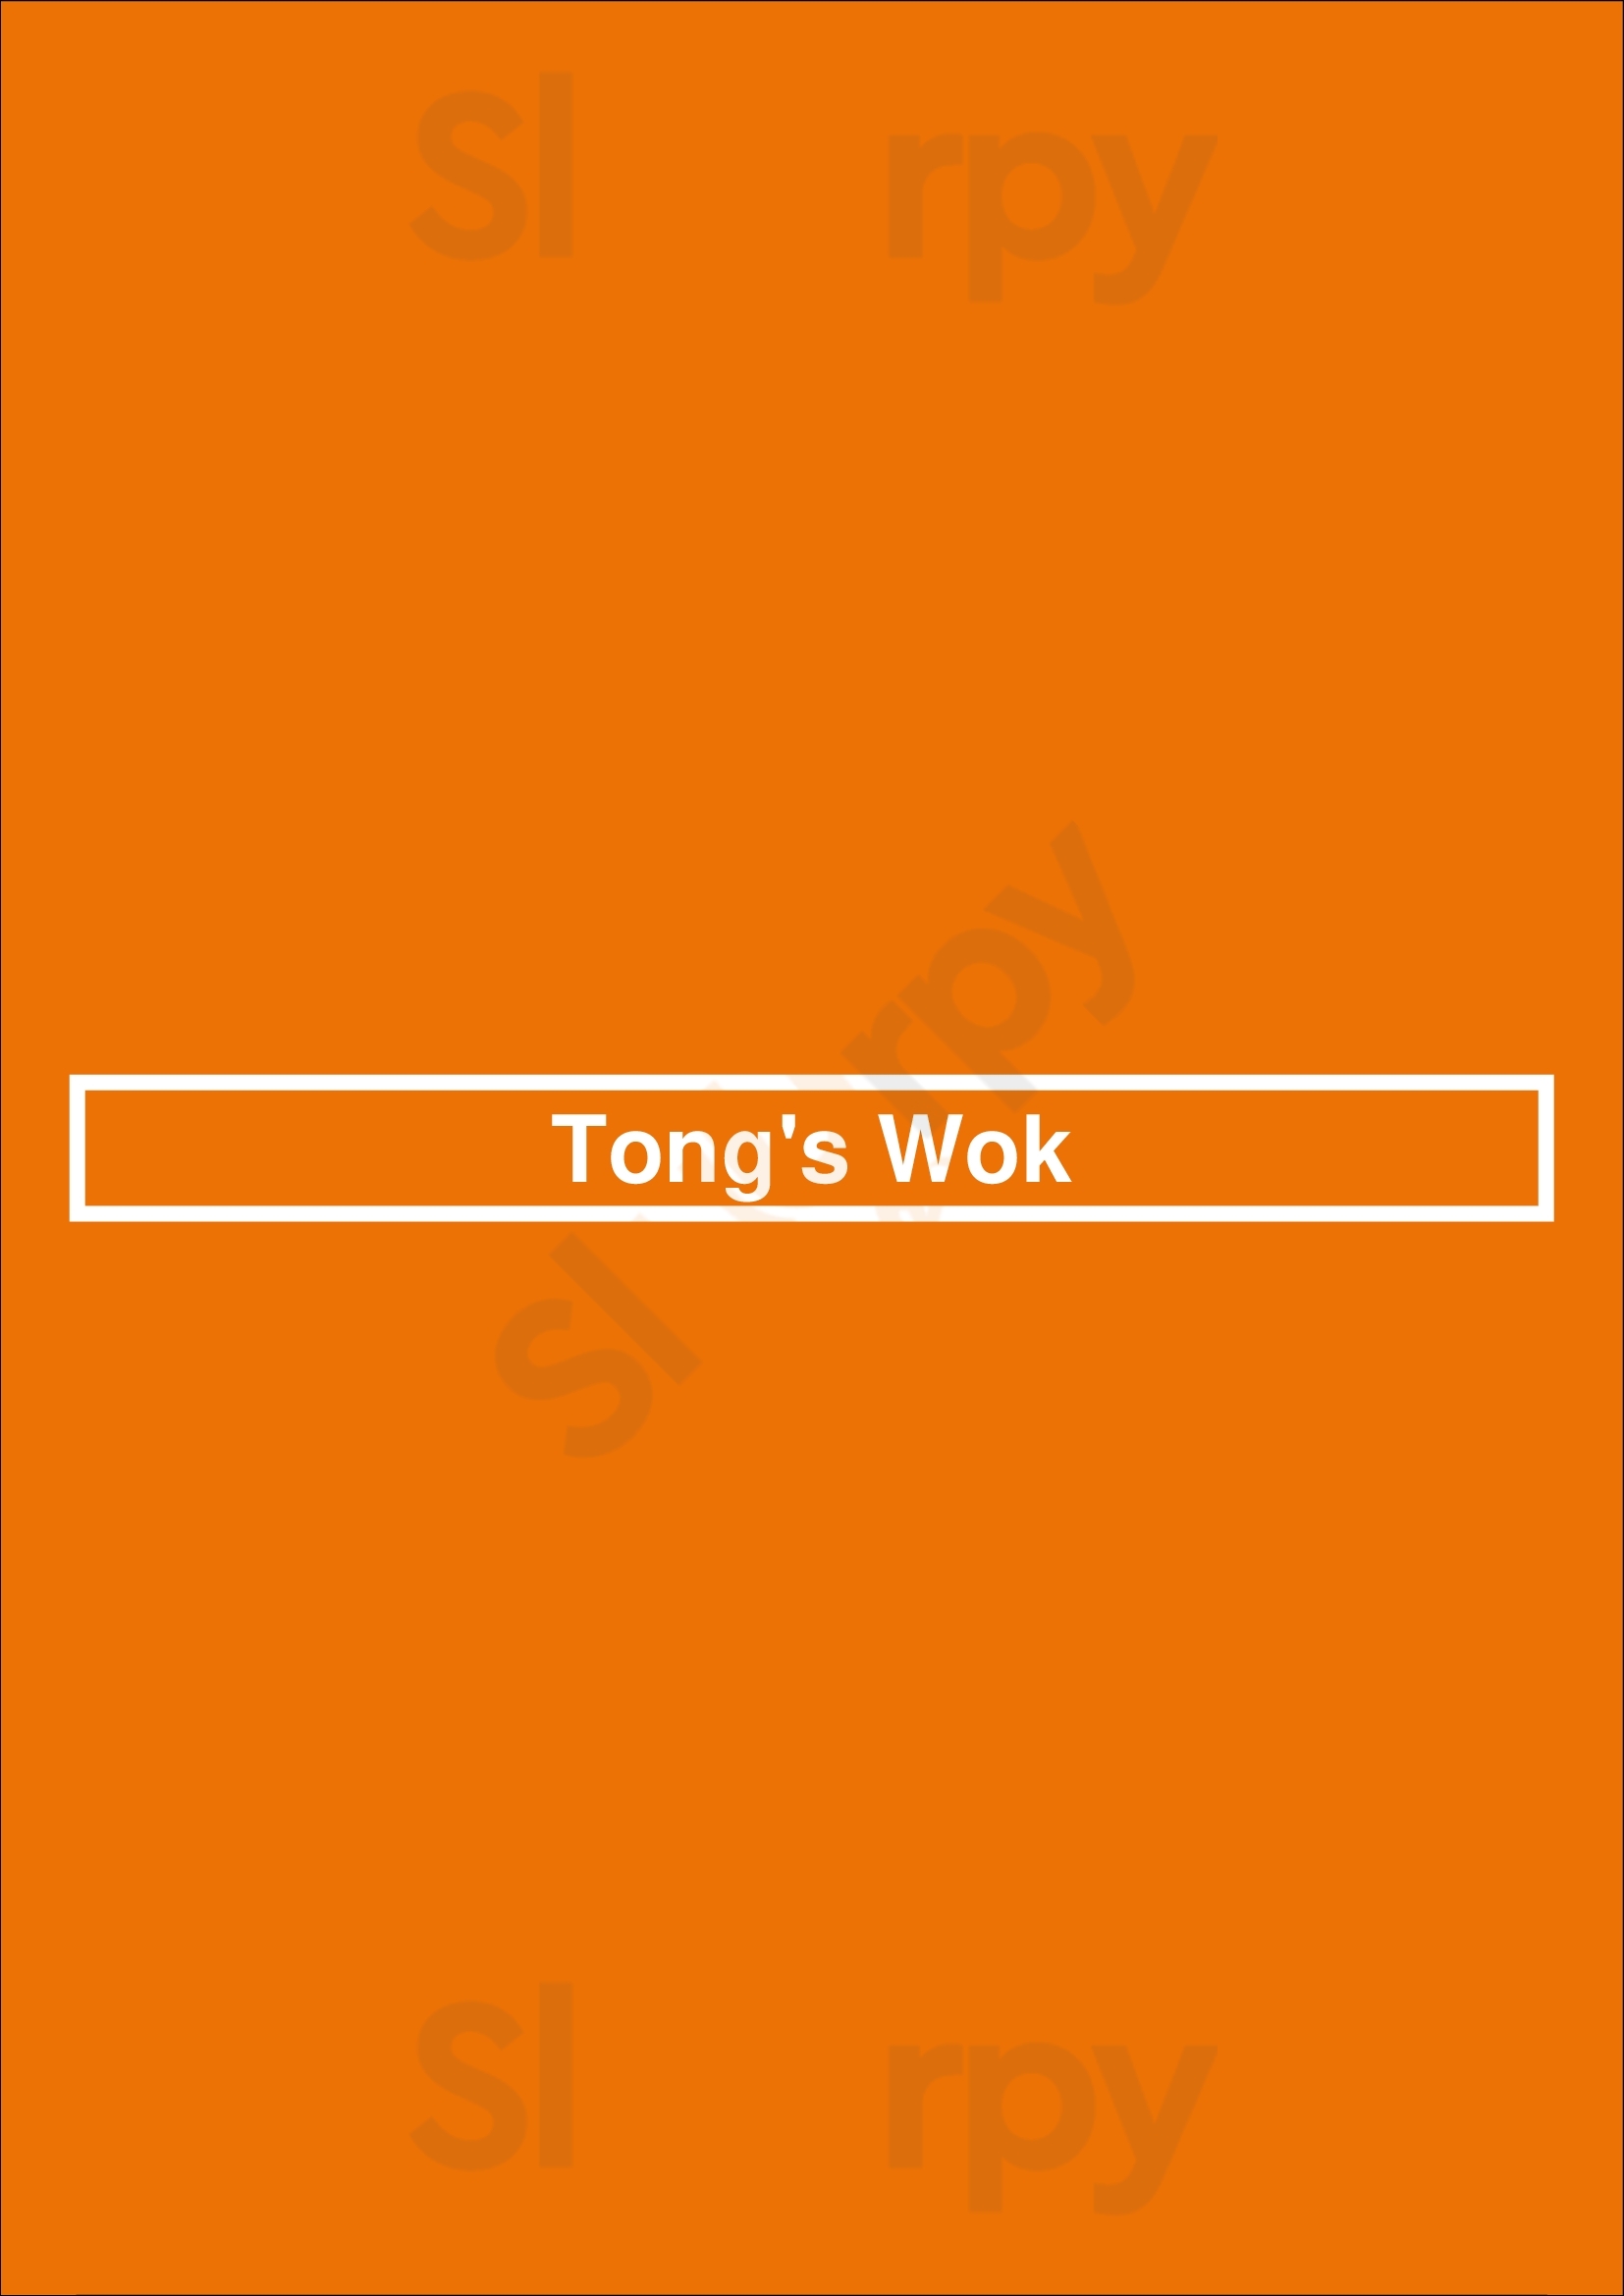 Tong's Wok Saskatoon Menu - 1